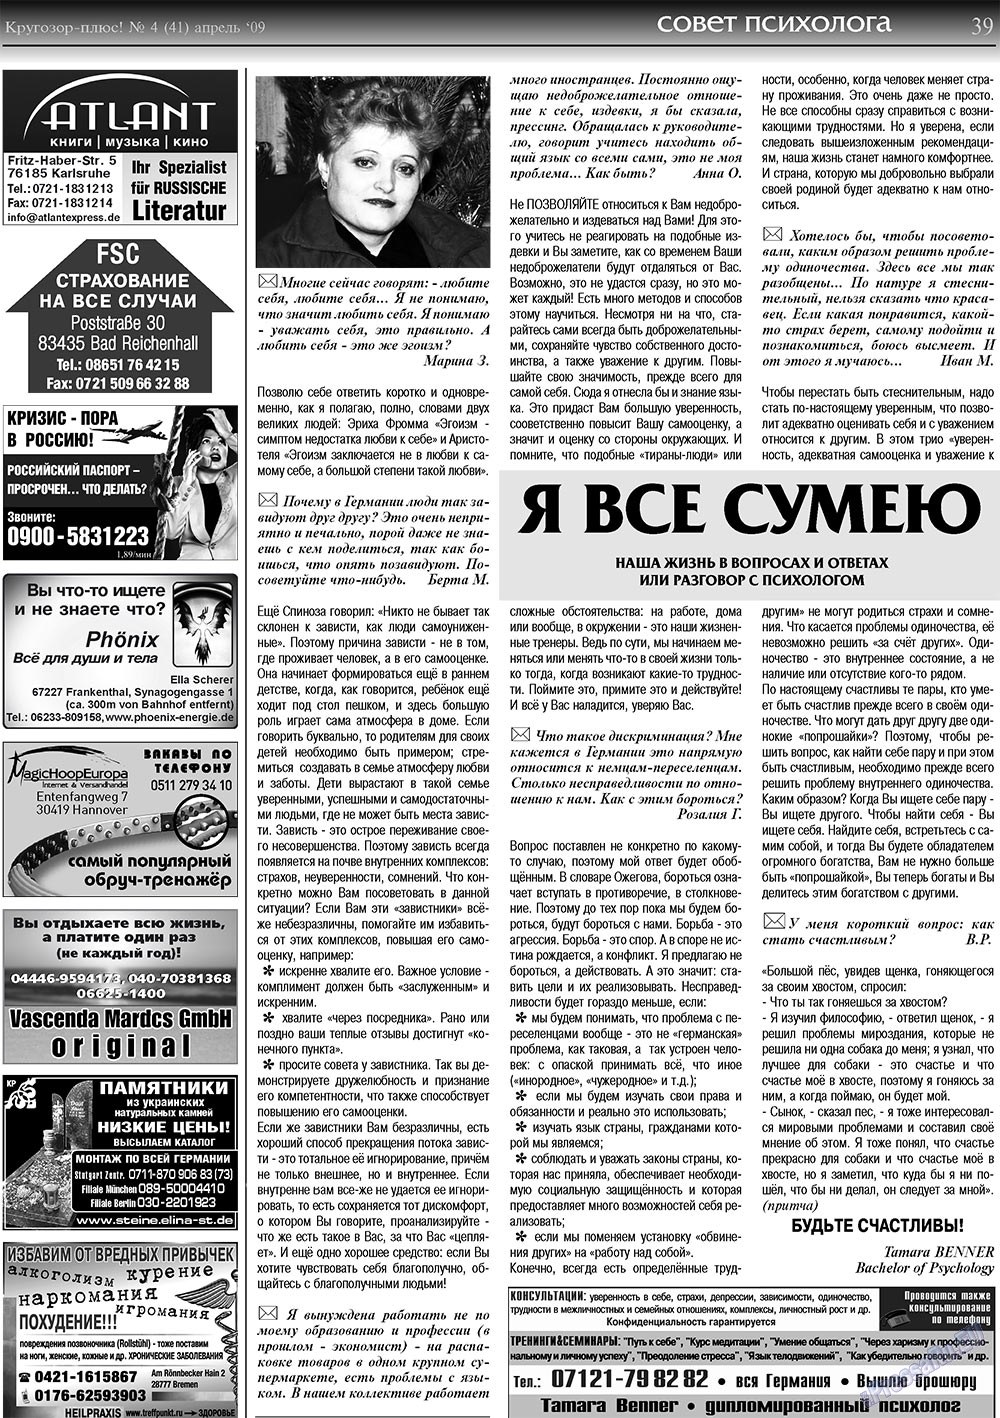 Кругозор плюс!, газета. 2009 №4 стр.39